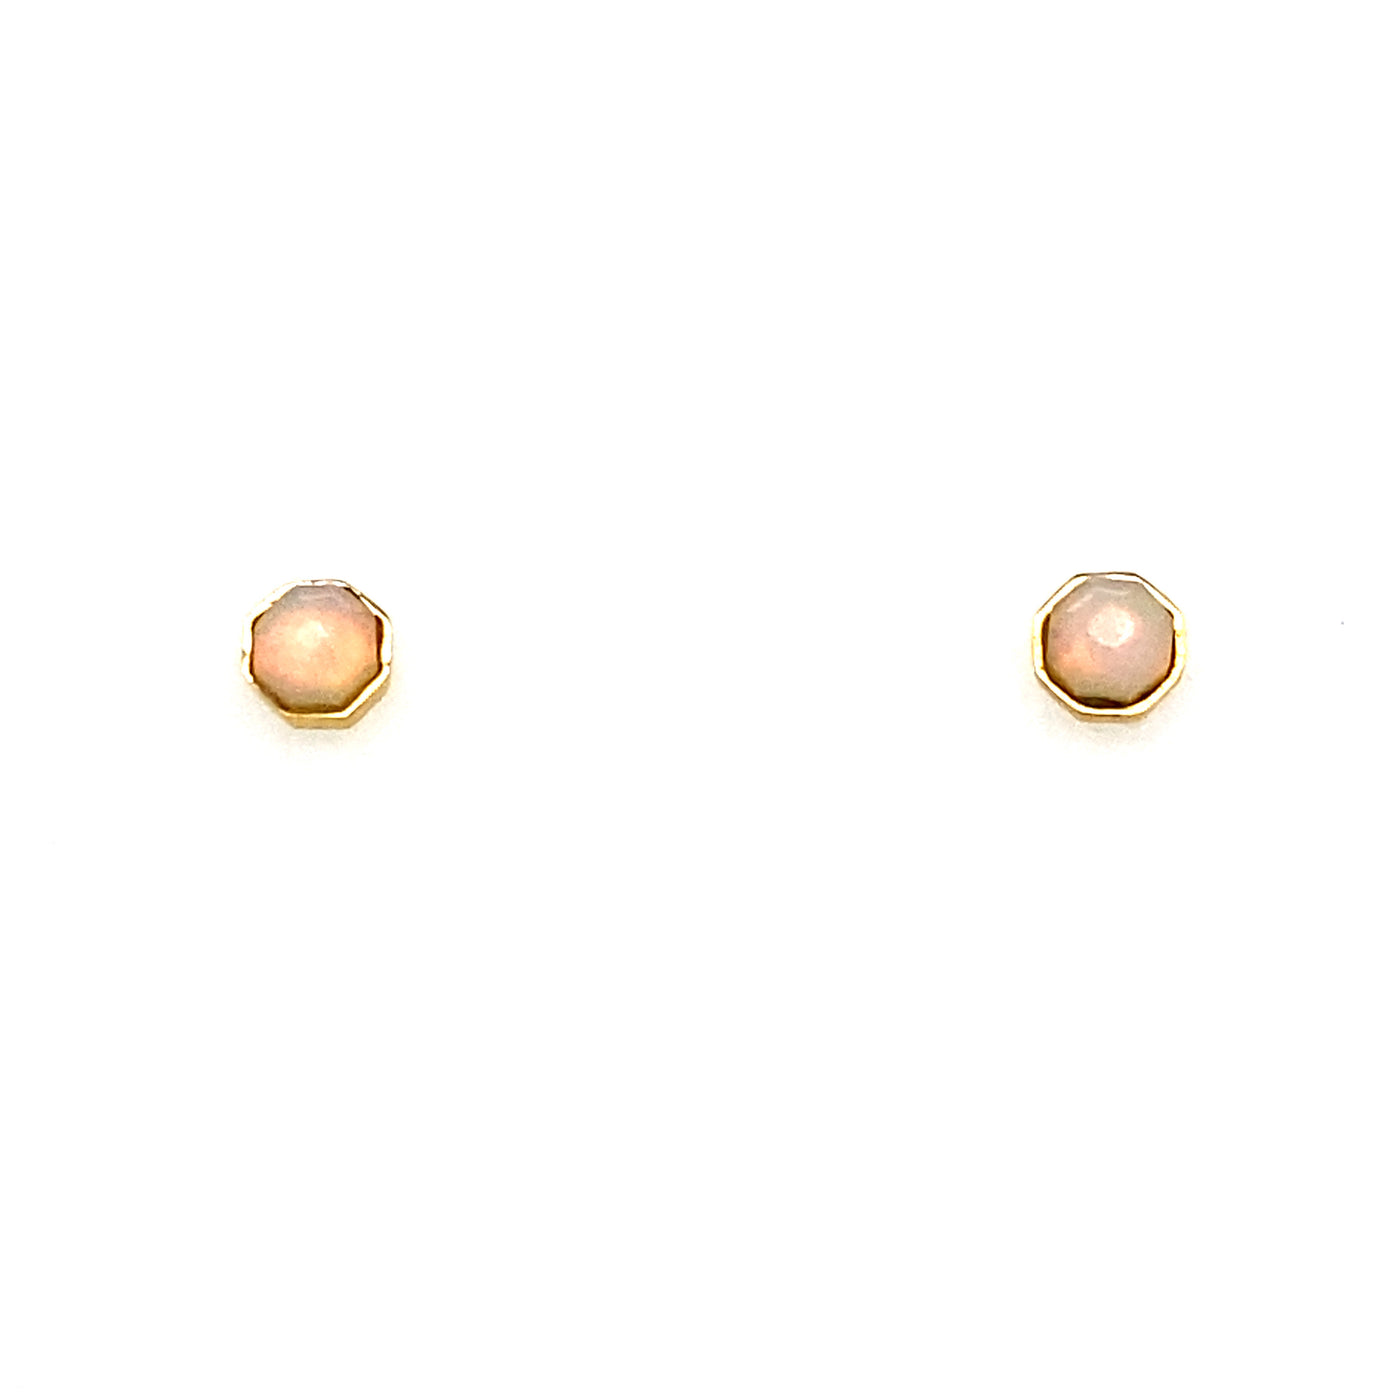 Gemstone Octagonal Stud Earrings